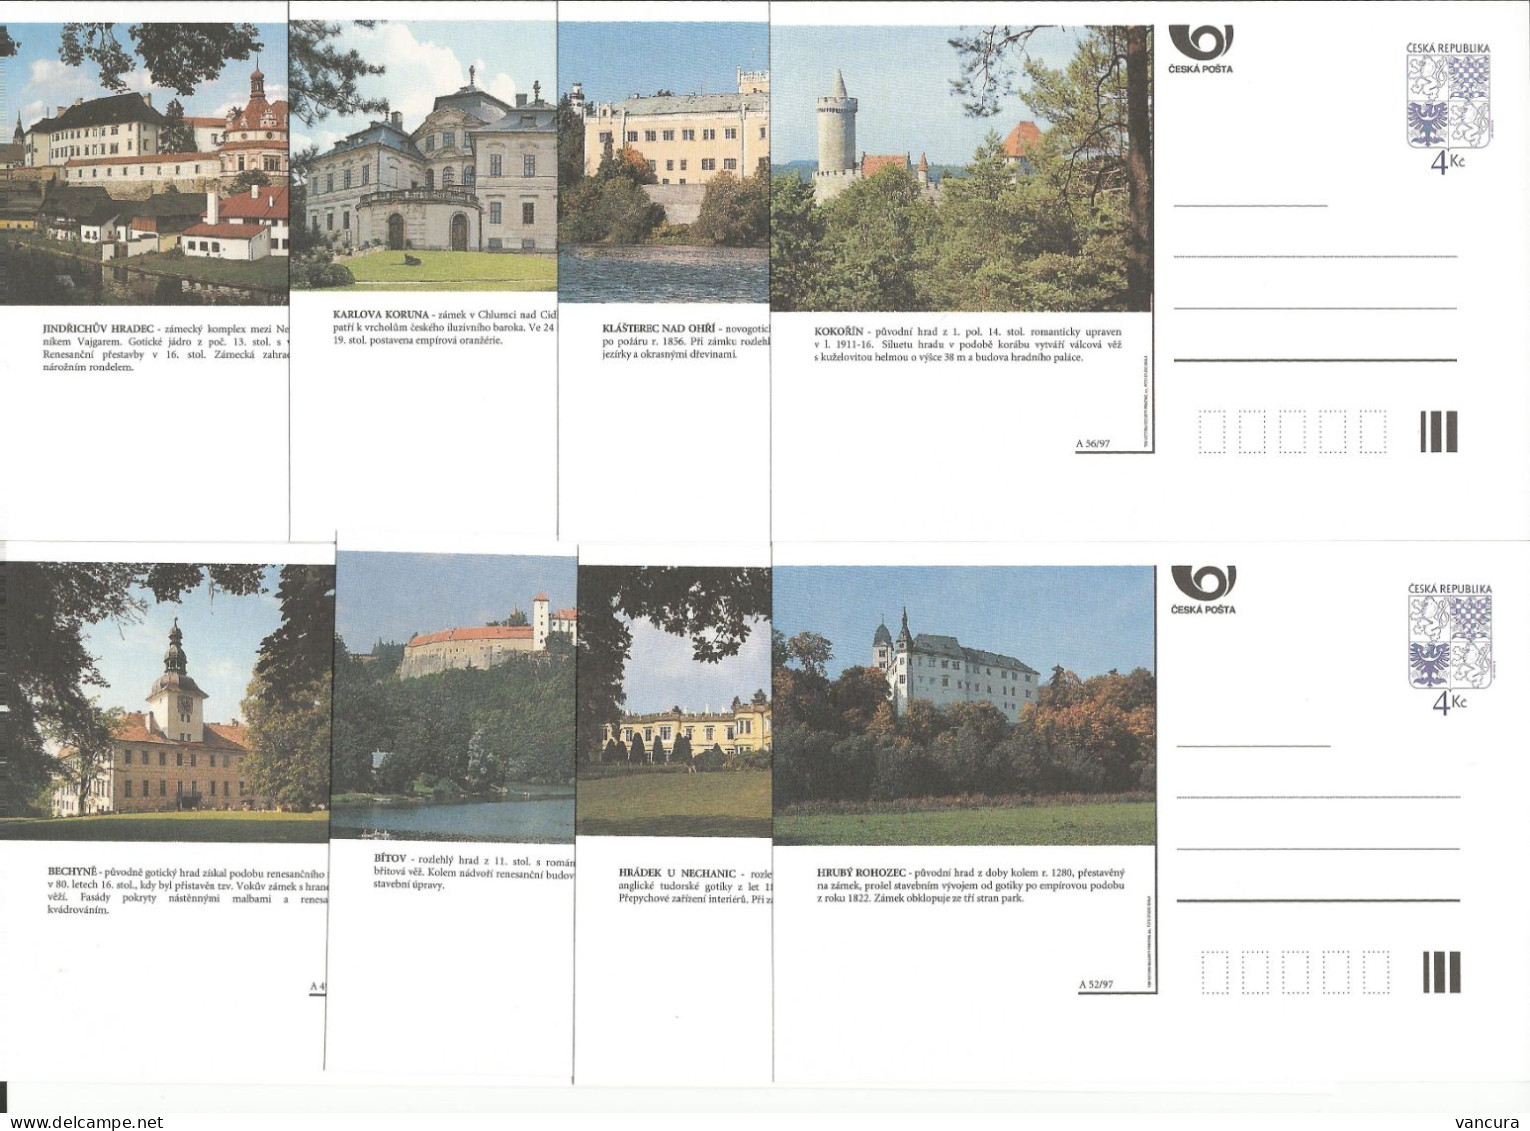 CDV 25 A - Czech Republic Castles And Mansions 1997 - Castillos